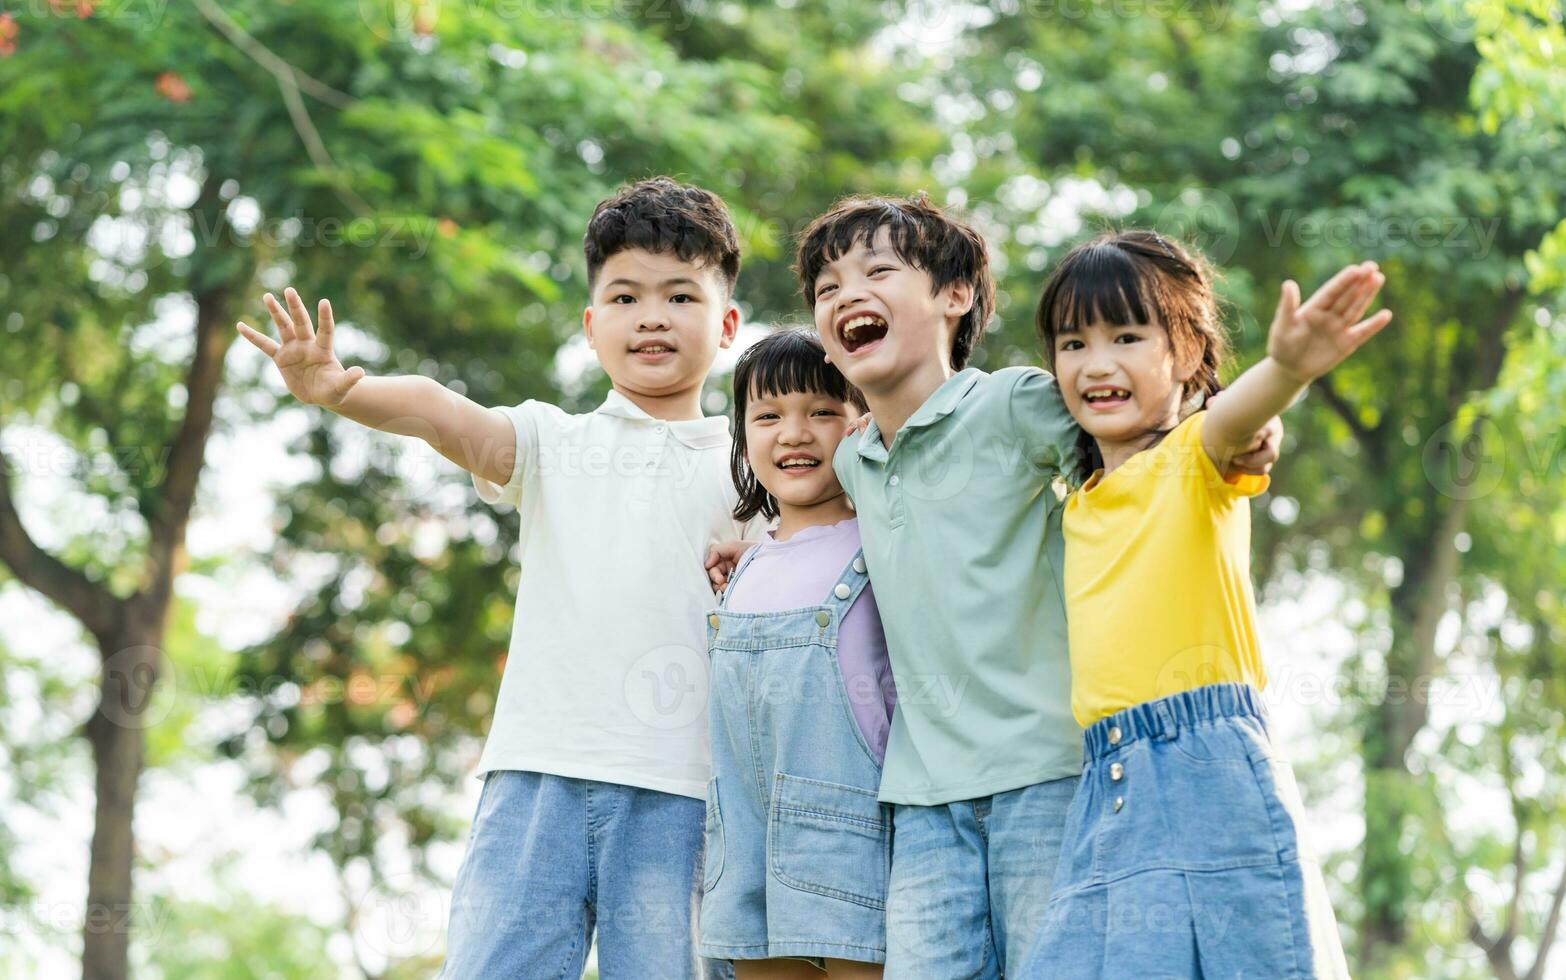 gruppo di carino asiatico bambini avendo divertimento nel il parco foto